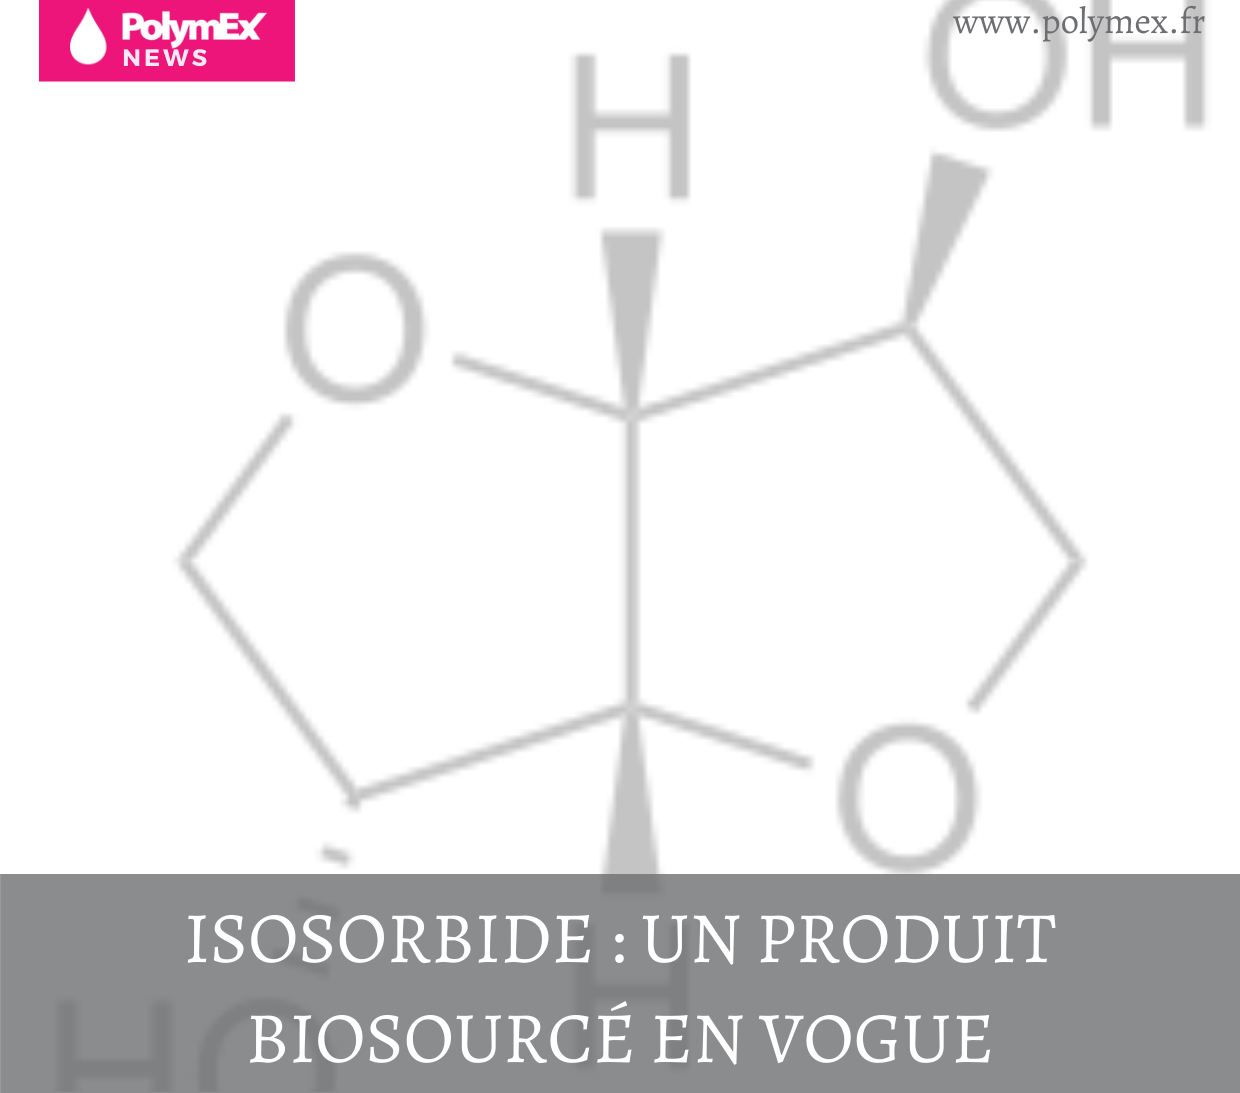 Isosorbide : un produit biosourcé en vogue